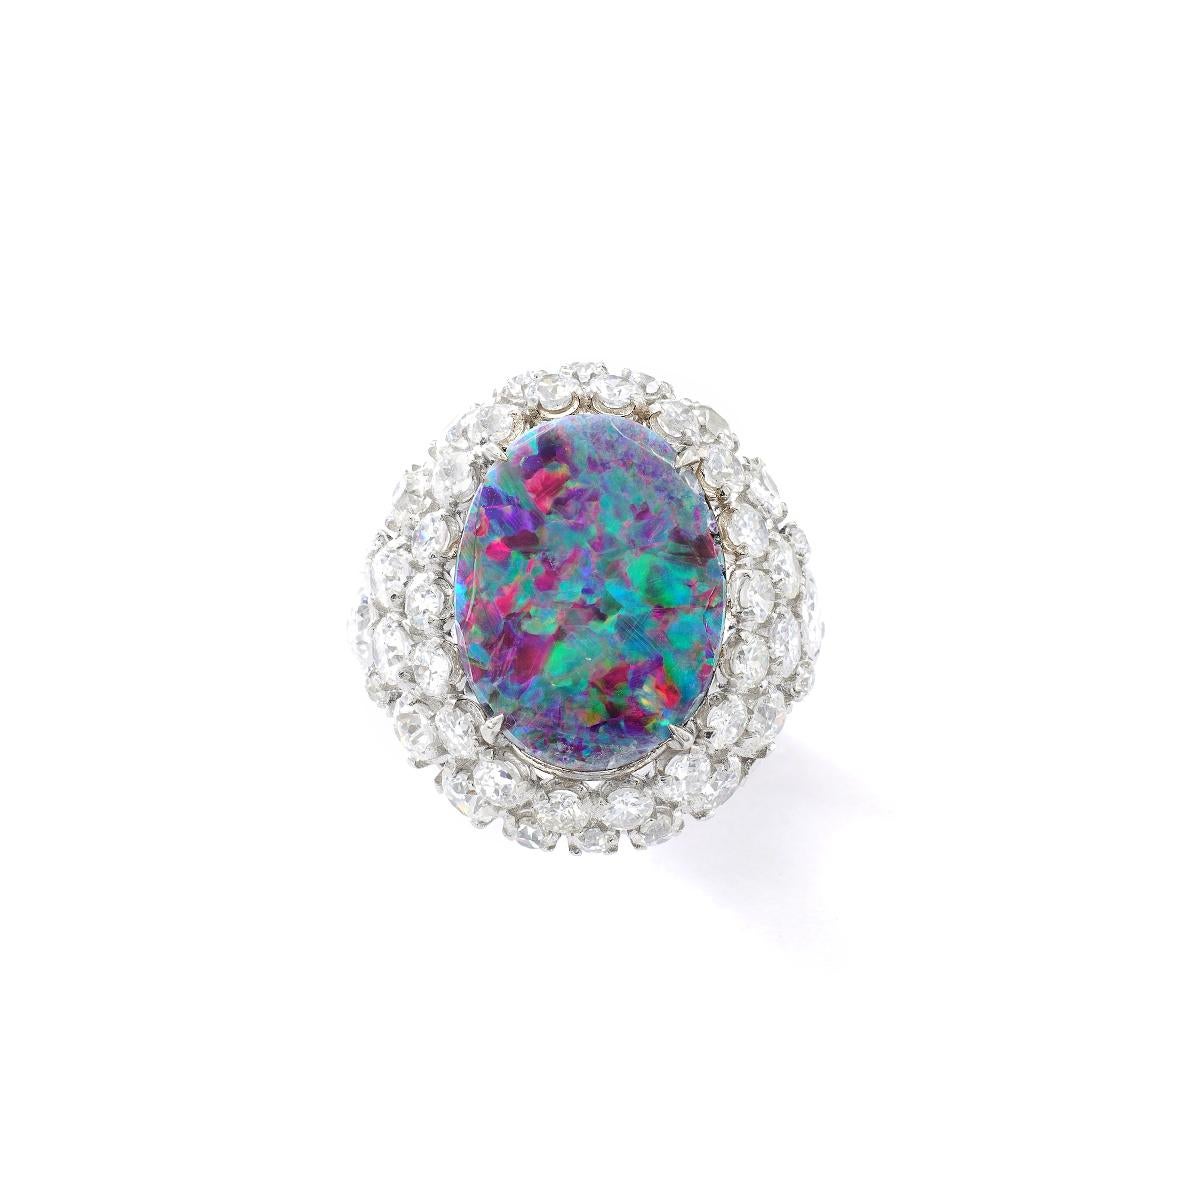 Schwarzer Opal, umgeben von Diamanten auf einem Platinring. Größe: 17,00 x 13,00 Millimeter.

Gesamtgewicht der Diamanten: ca. 4,80-5,00 Karat.
Geschätzte Farbe H, Klarheit Vs.